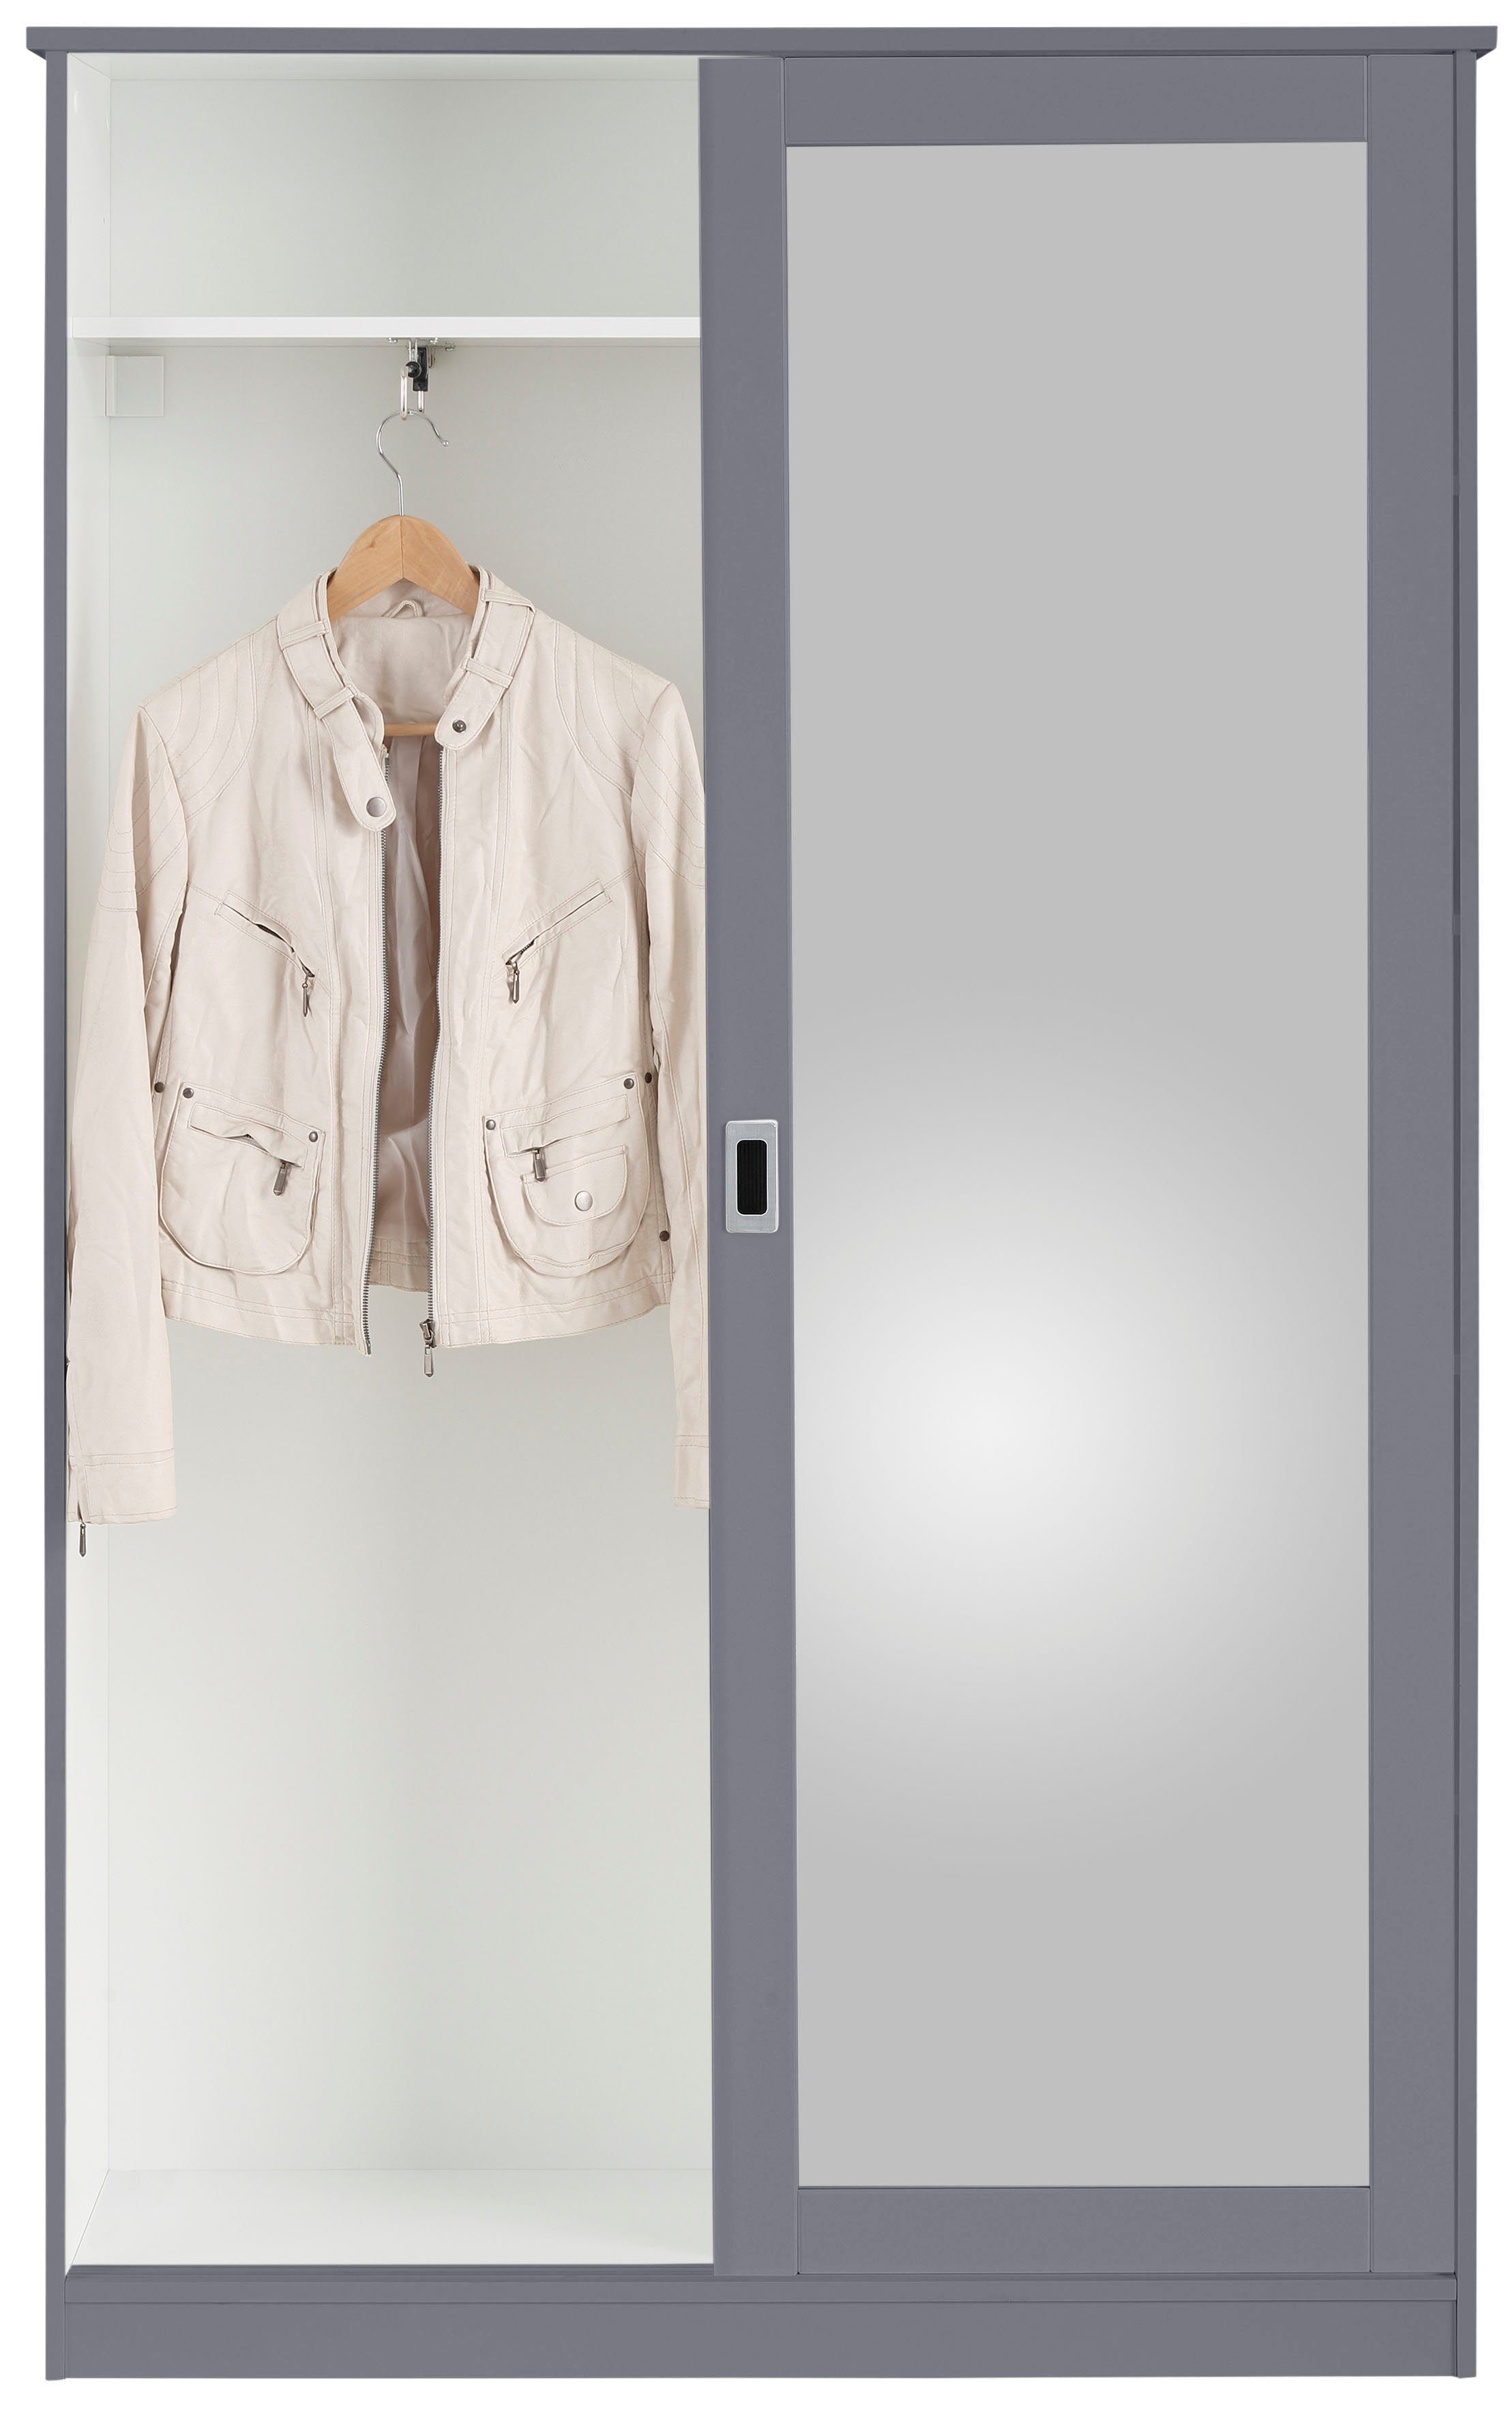 Paneel grau (3-St), aus (3-St) Garderoben-Set Home bestehend Schuhkommode, affaire und Nekso, Garderobenschrank